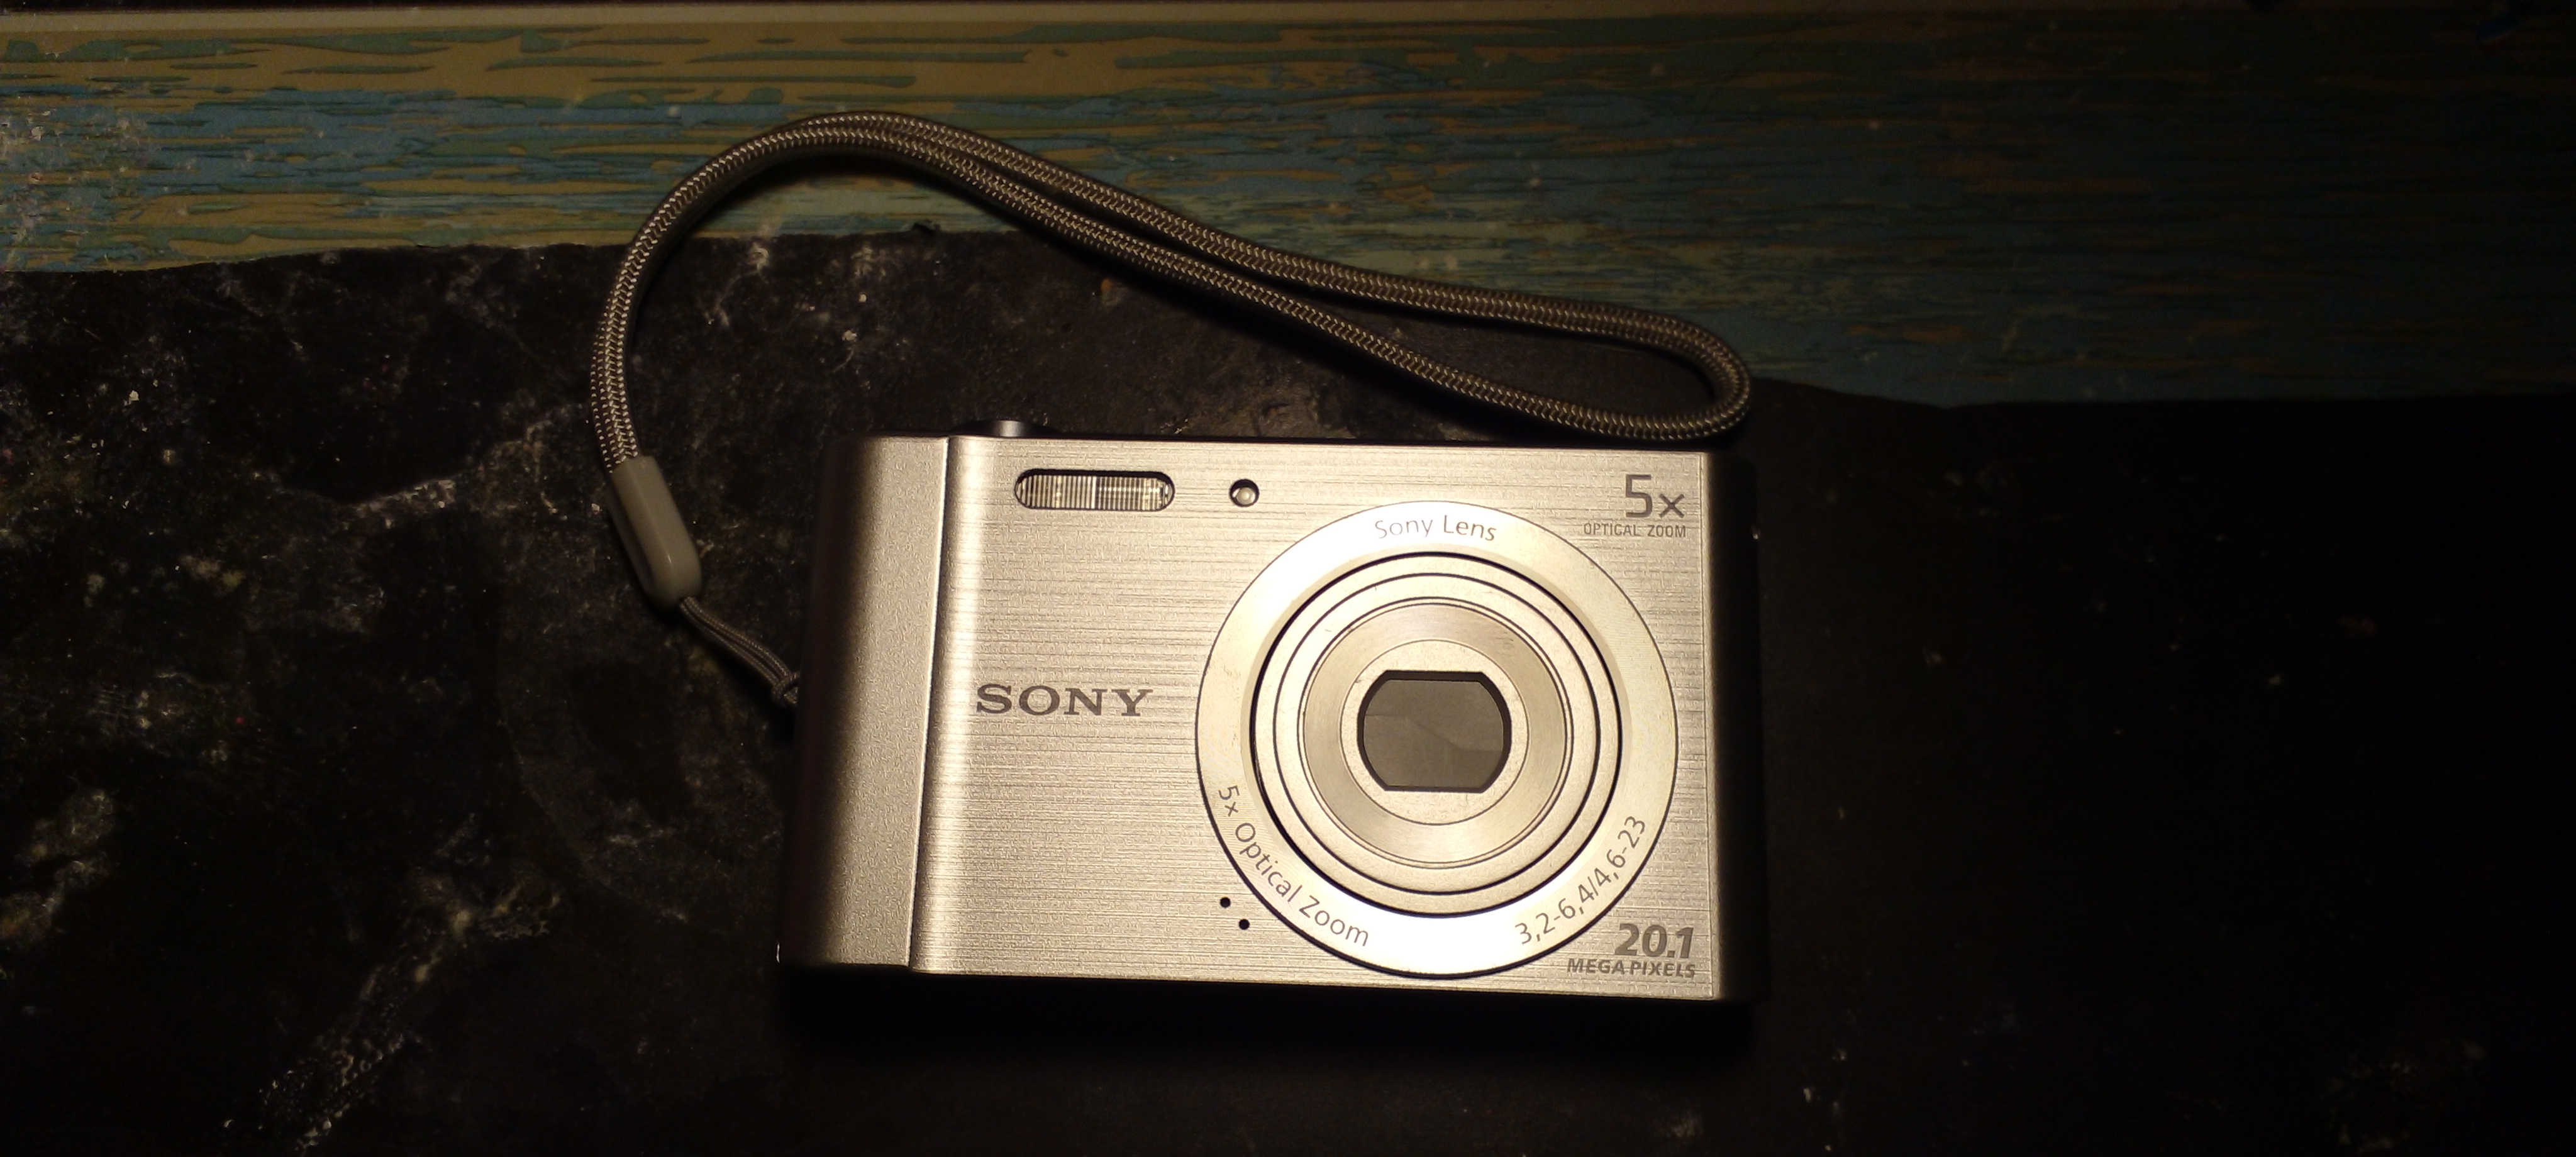 File:Sony Cyber-Shot W800.jpg - Wikipedia